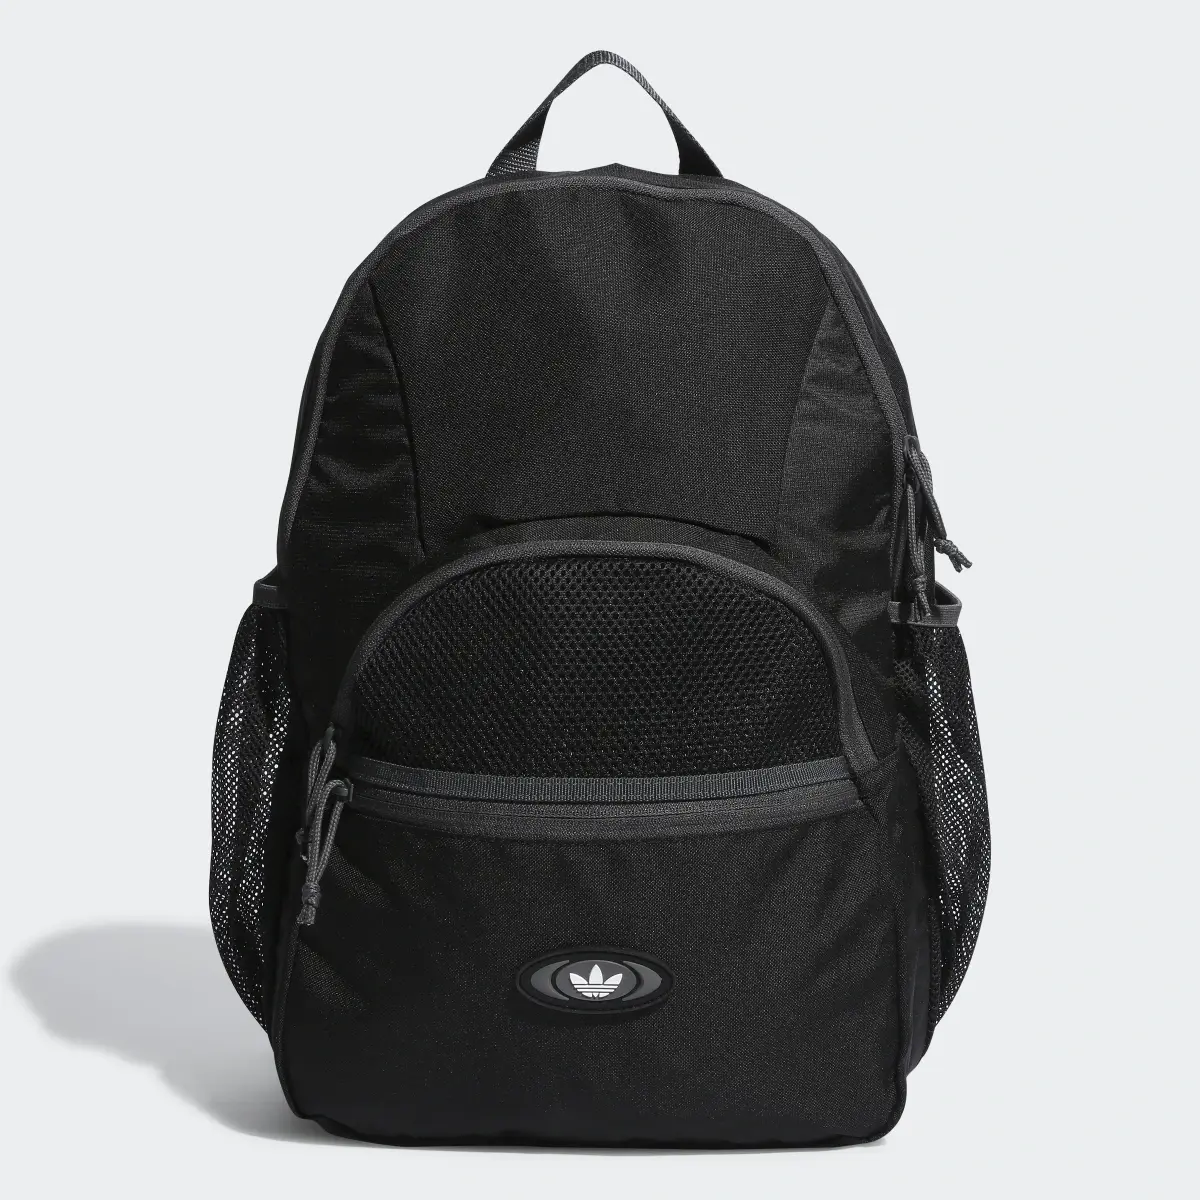 Adidas Rekive Backpack. 2